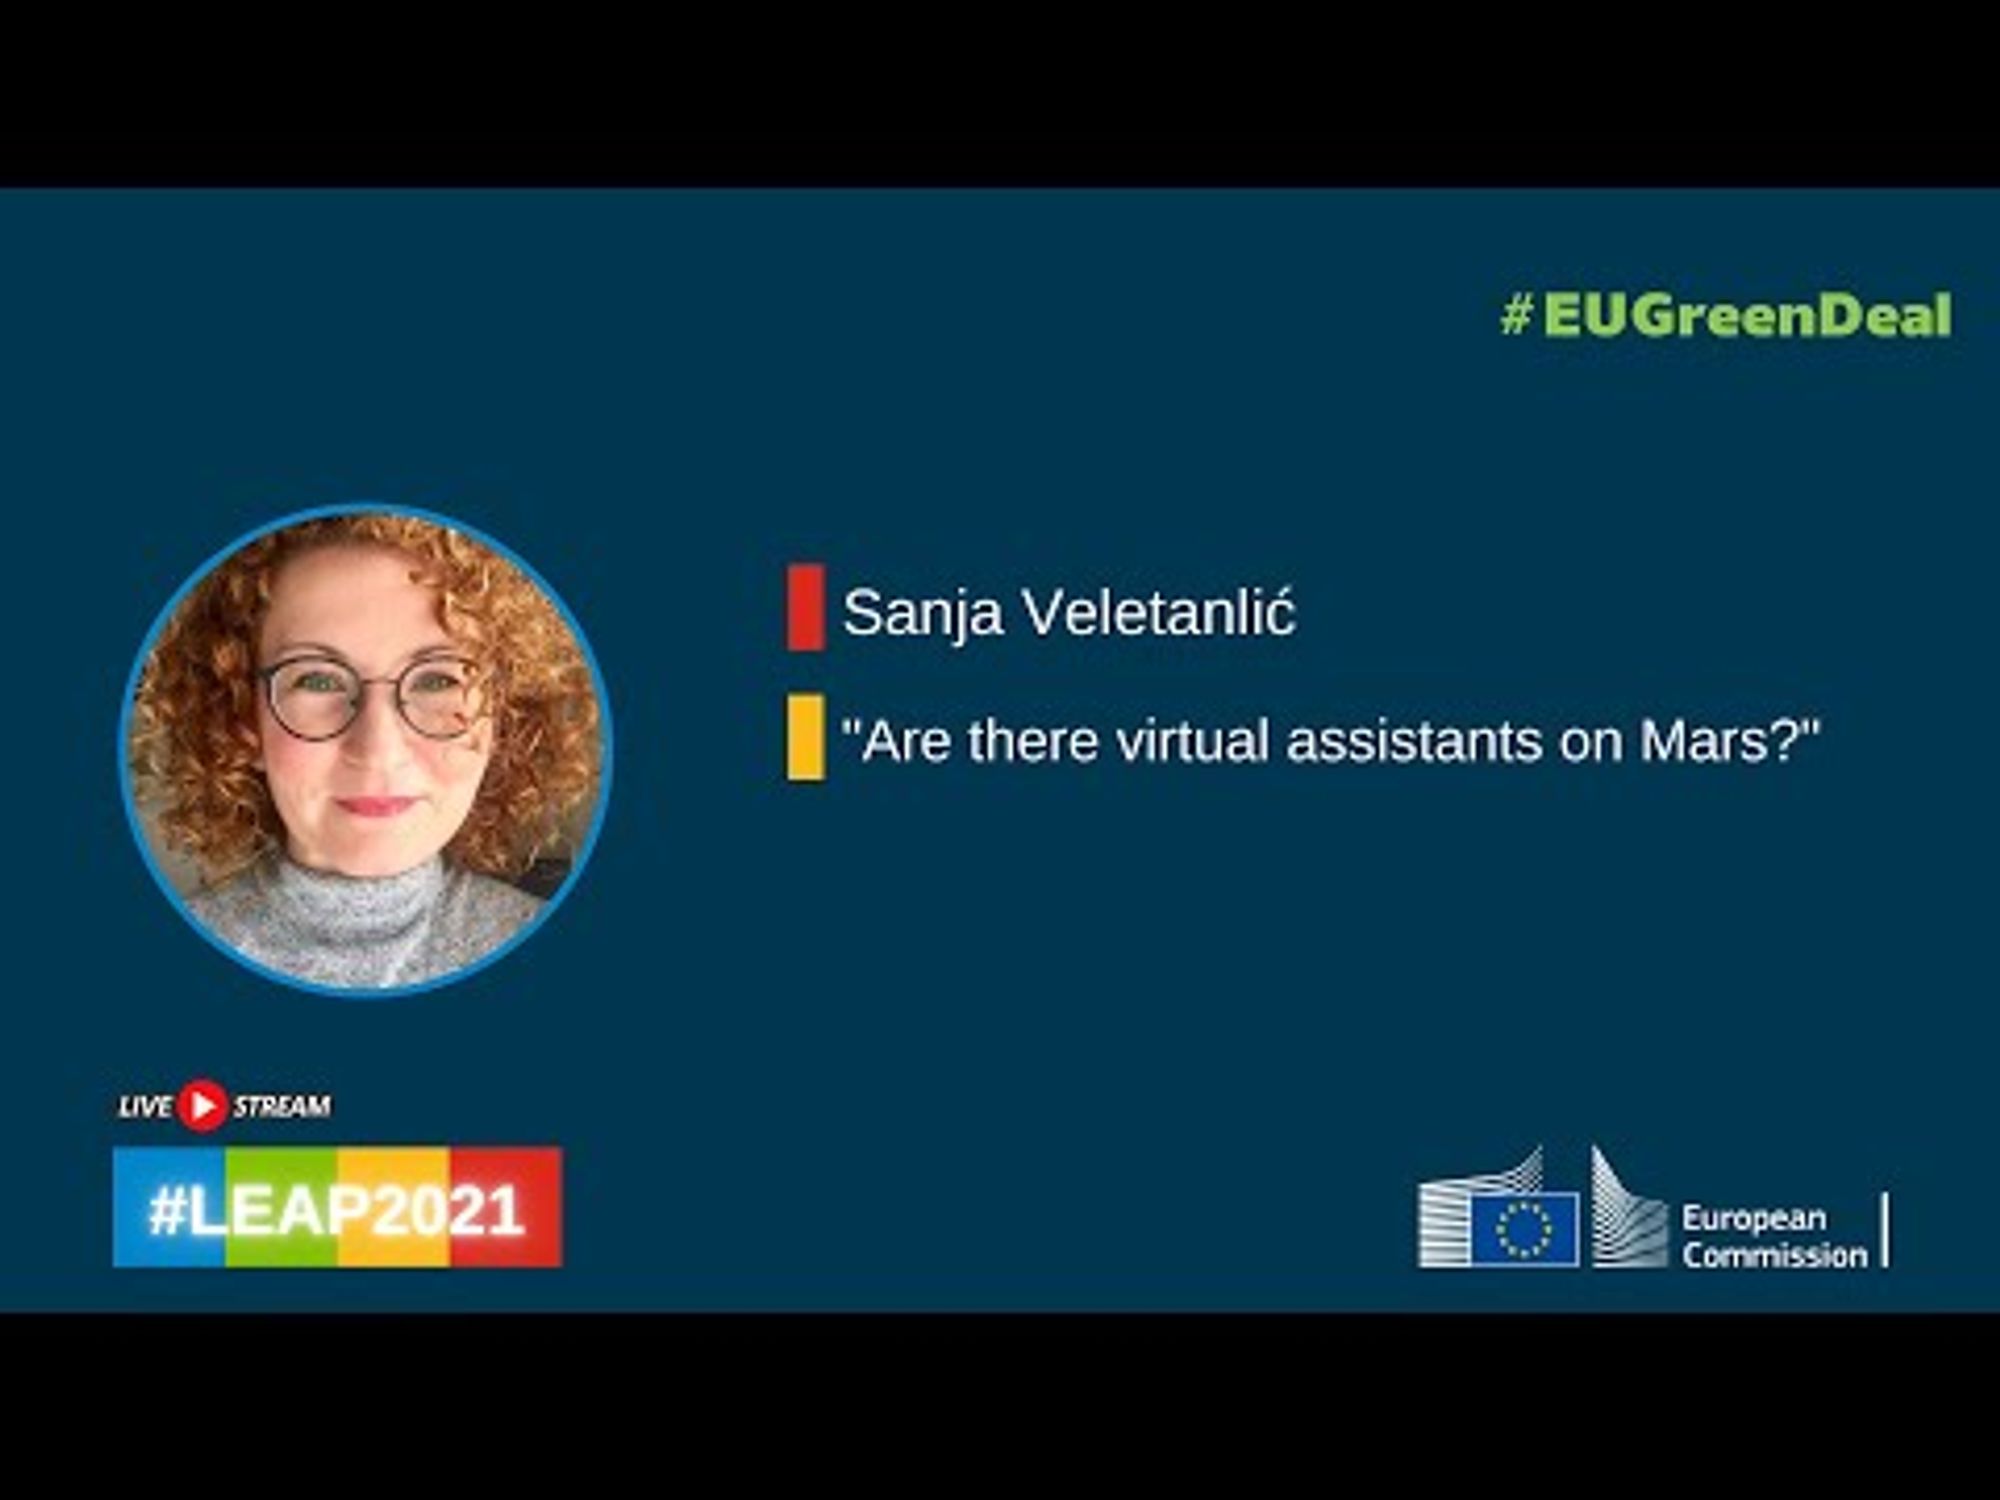 Sanja Veletanlić - Are there virtual assistants on Mars?